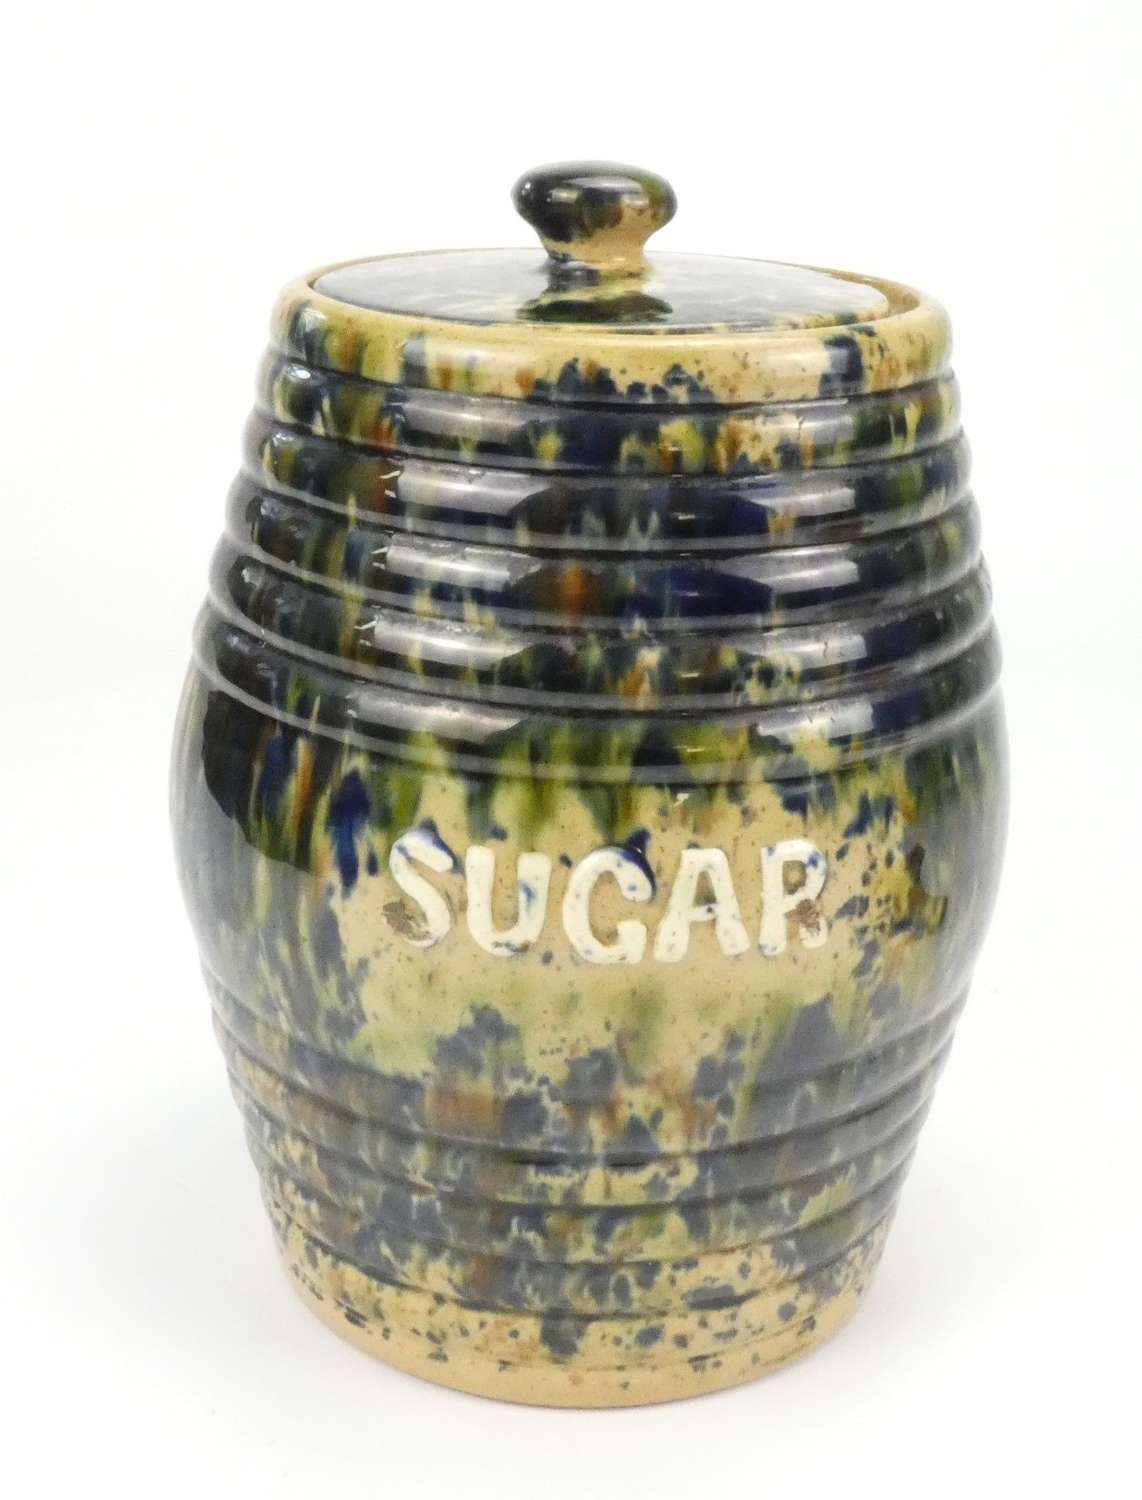 Sugar Jar - Morrison & Crawford, Rosslyn Pottery, Kirkcaldy